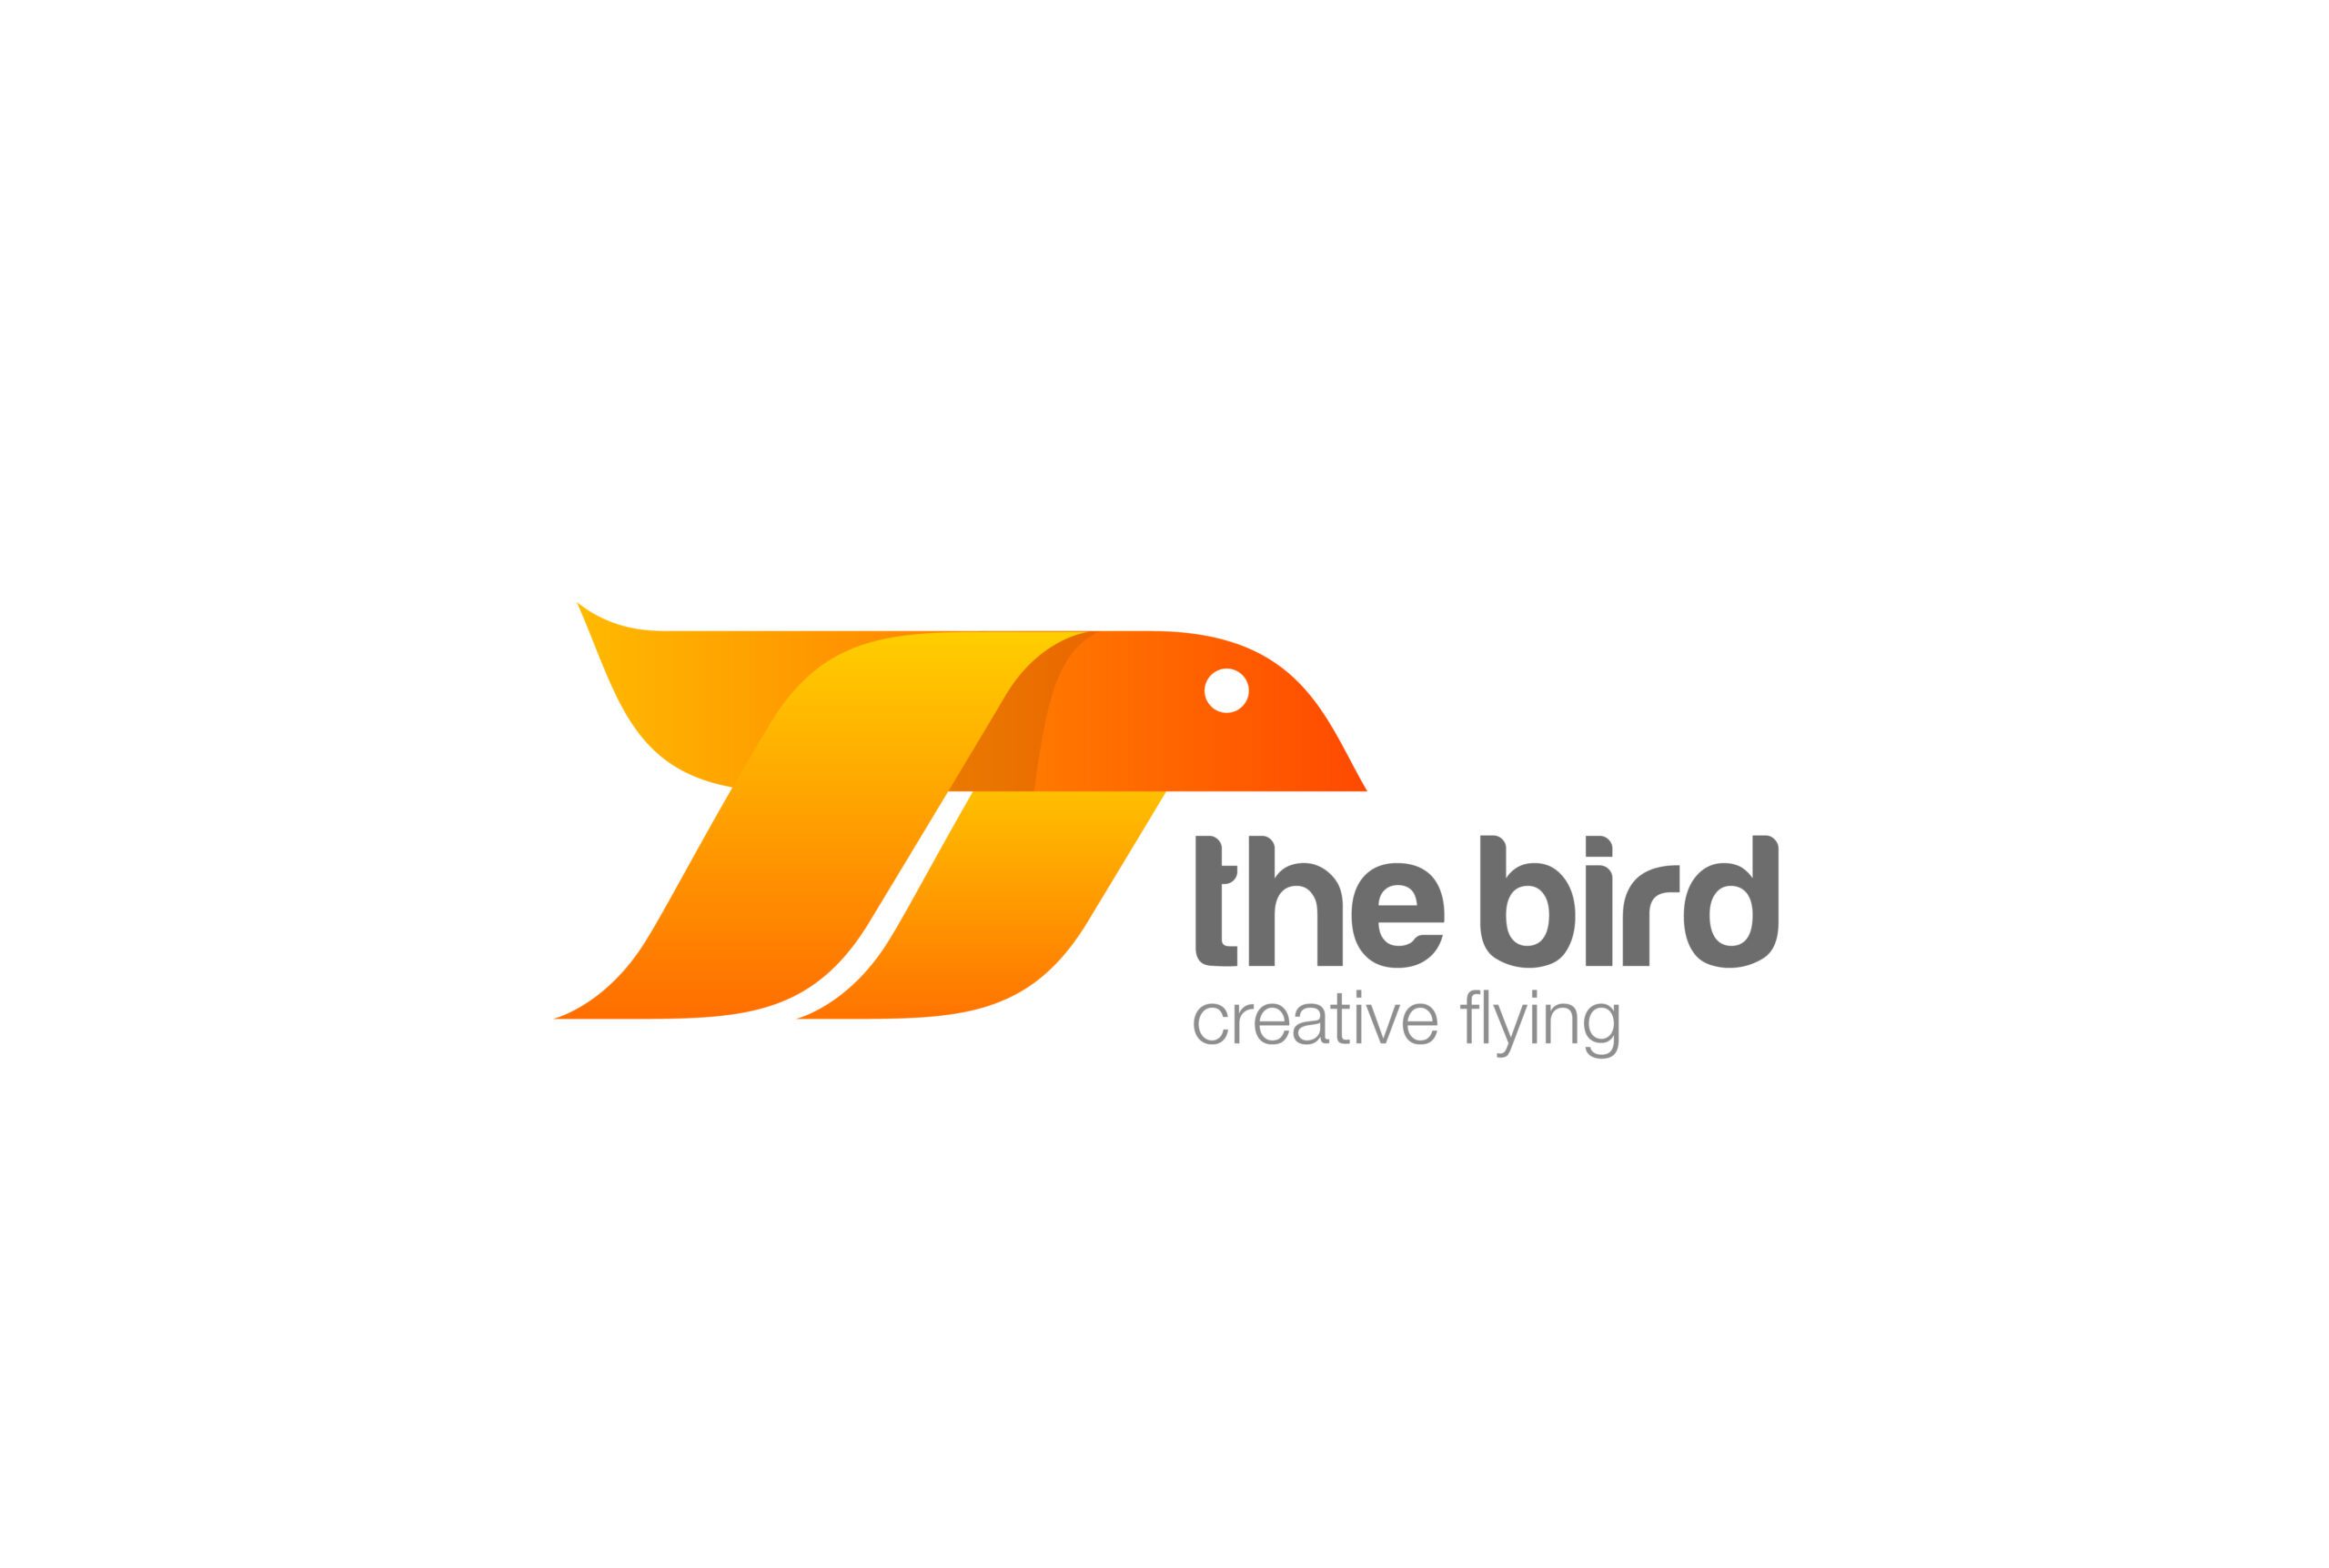 Flying Bird abstract Logo design vector template.
Eagle Falcon geometric logotype concept icon.